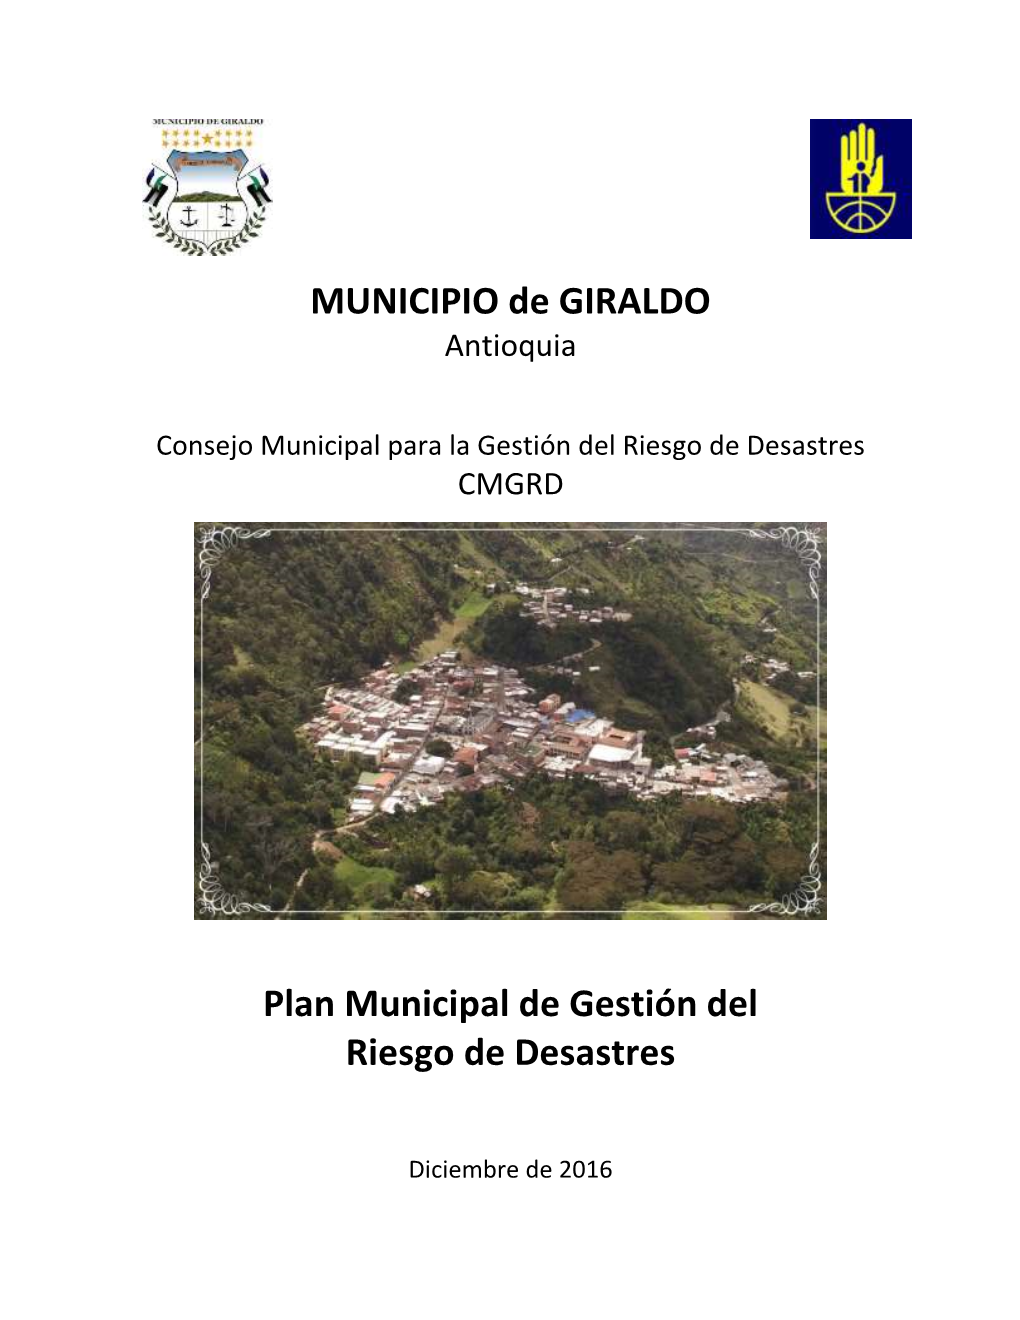 MUNICIPIO De GIRALDO Plan Municipal De Gestión Del Riesgo De